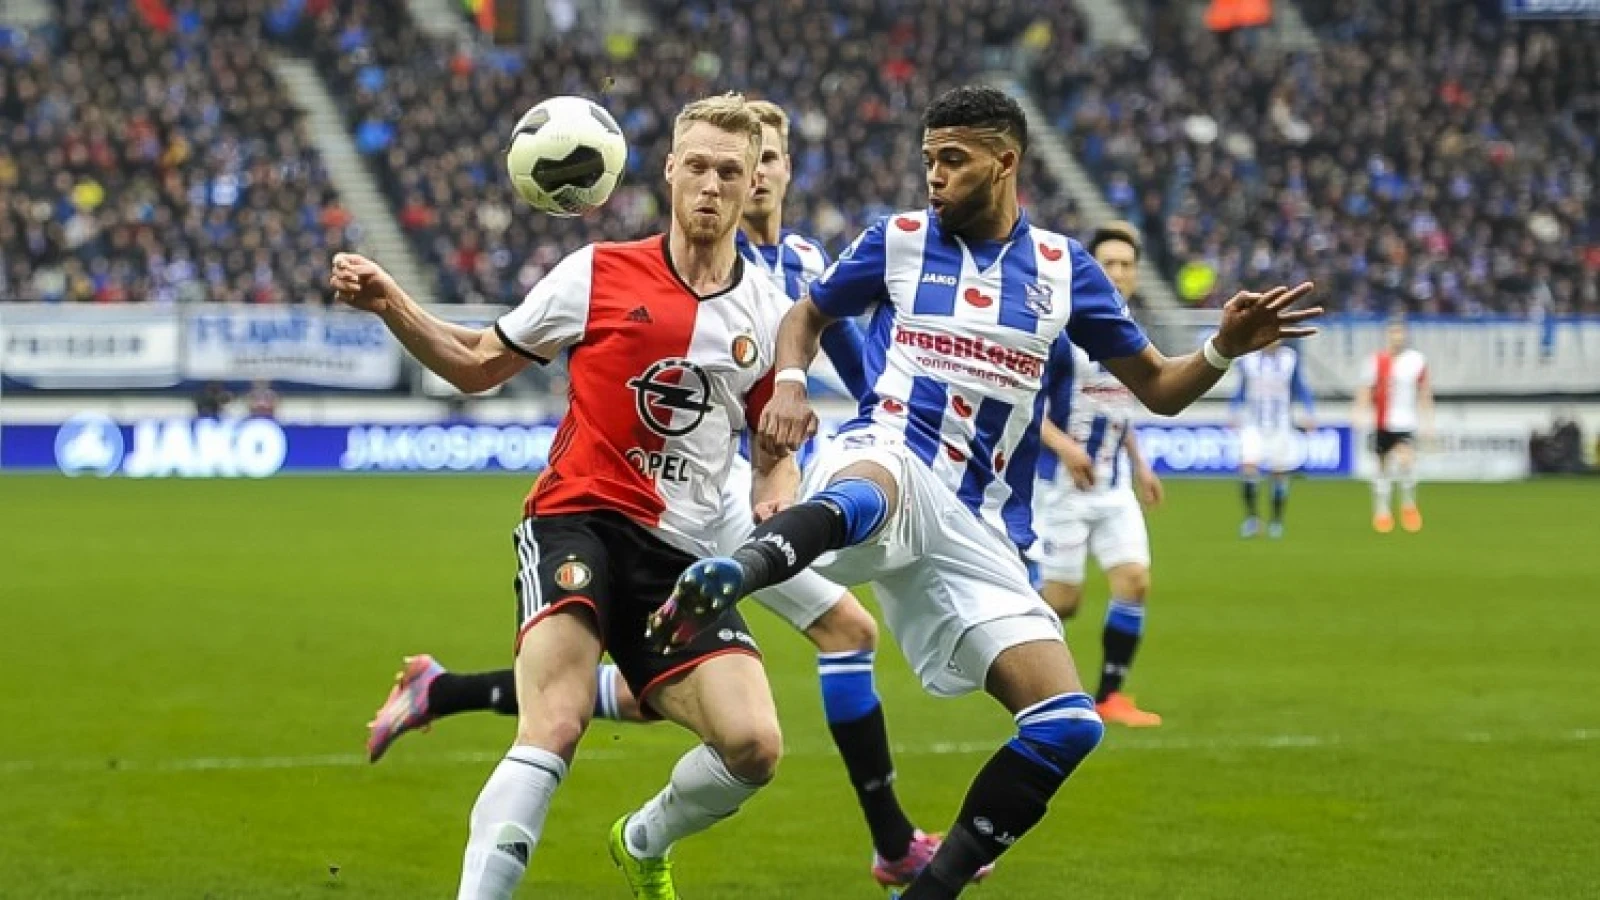 LIVE | sc Heerenveen - Feyenoord 1-2 | Einde wedstrijd